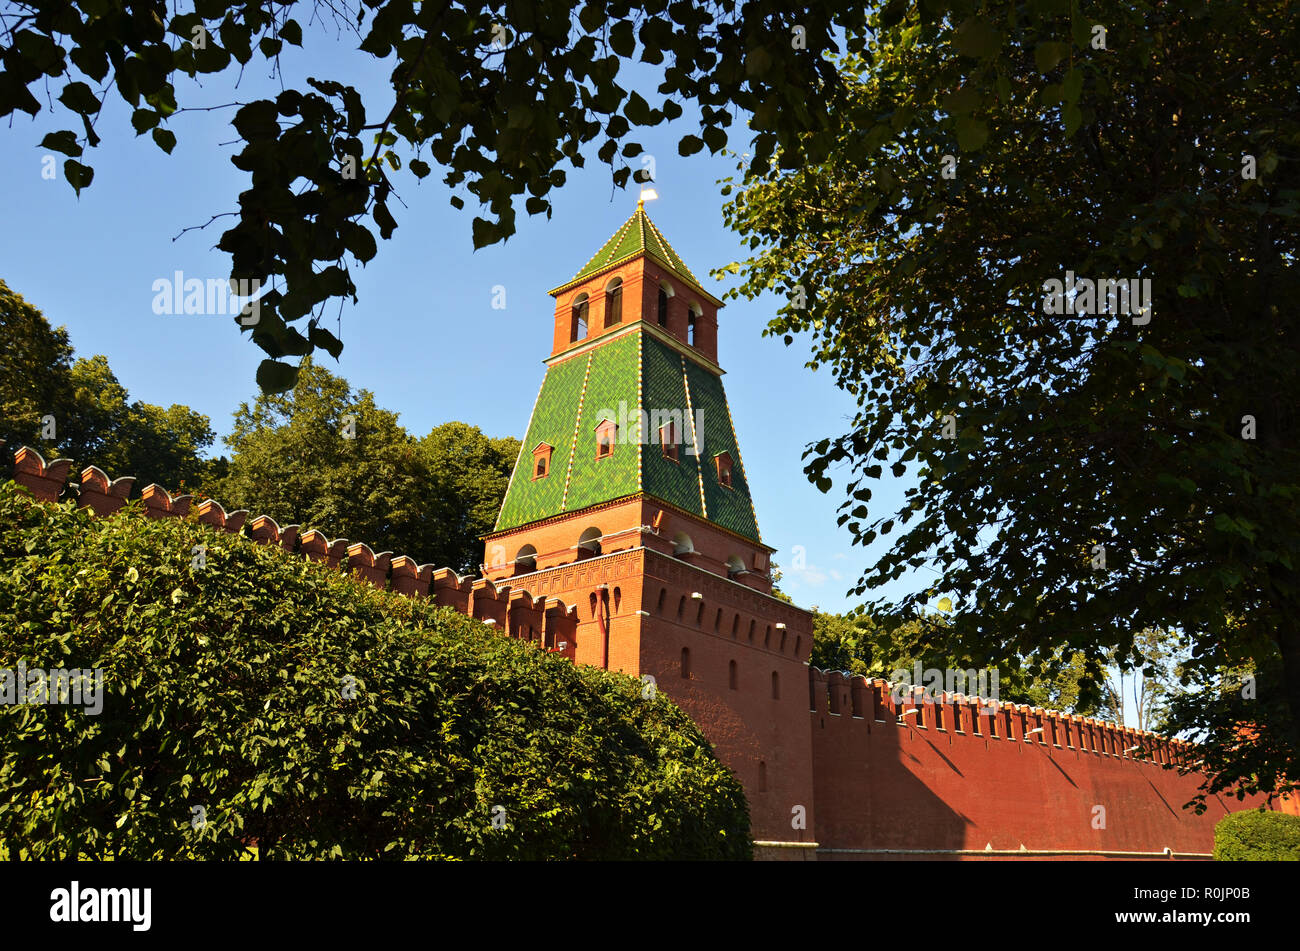 La Russia, Mosca, antica, architettura,Torre del Cremlino di Mosca. Immagine di stock Foto Stock